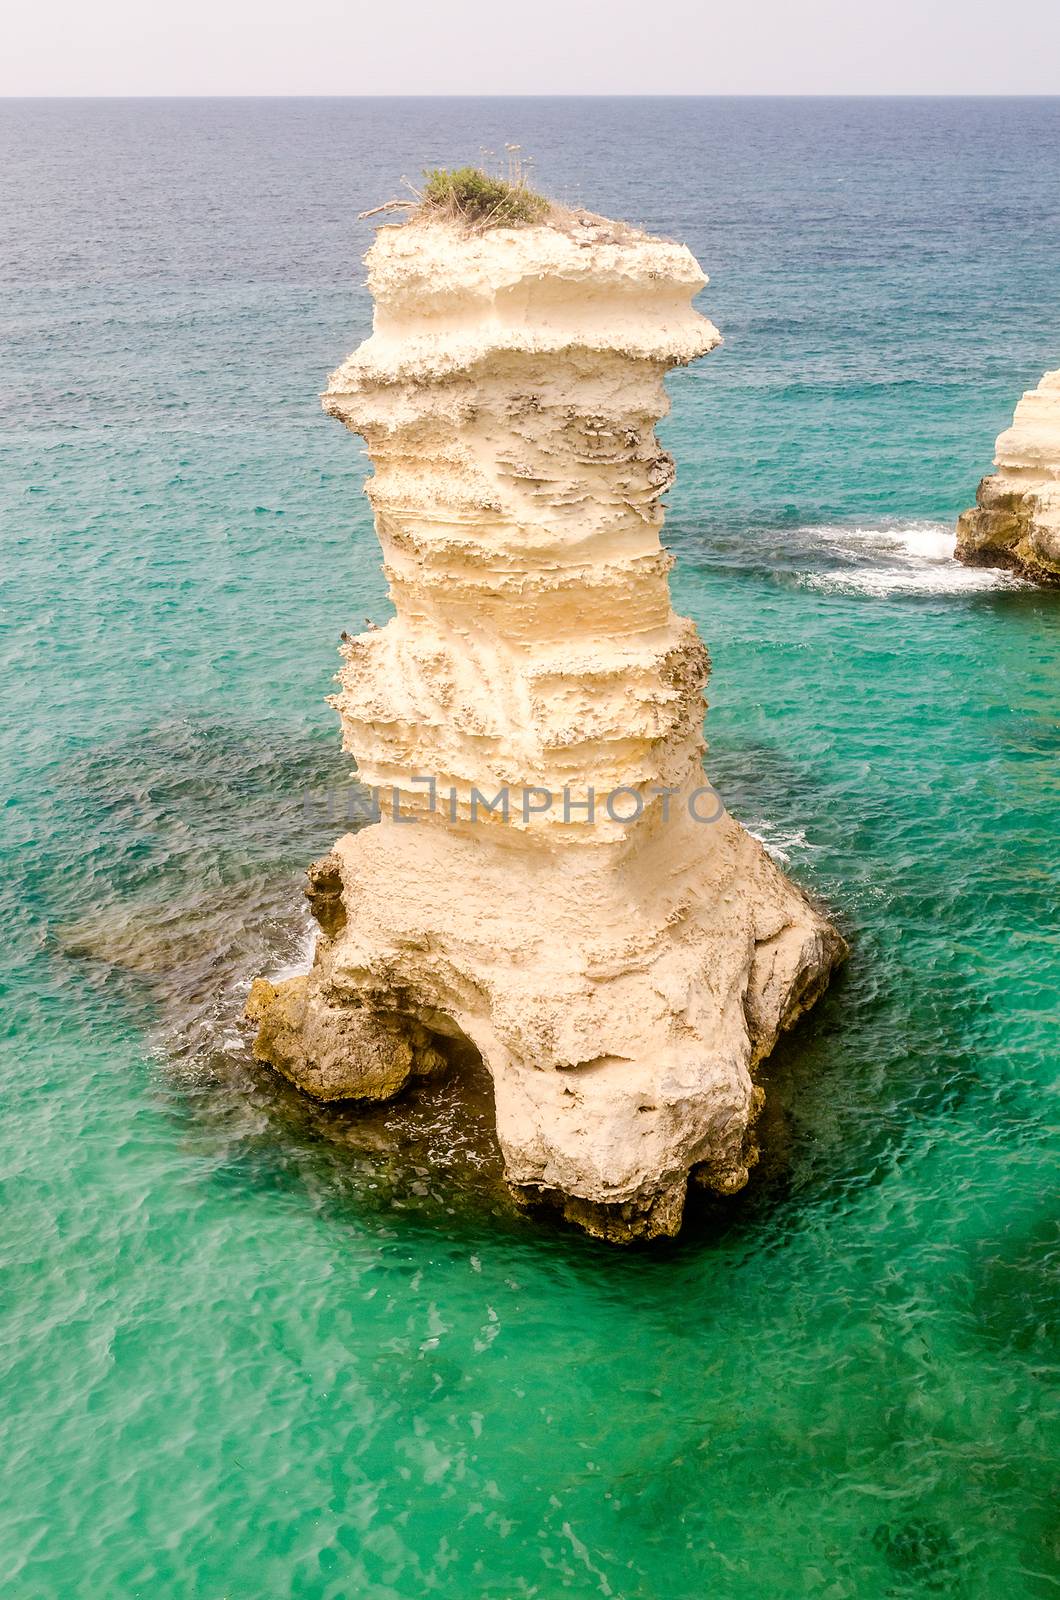 Scenic rocky cliffs of Torre Sant Andrea, Salento, Italy by marcorubino